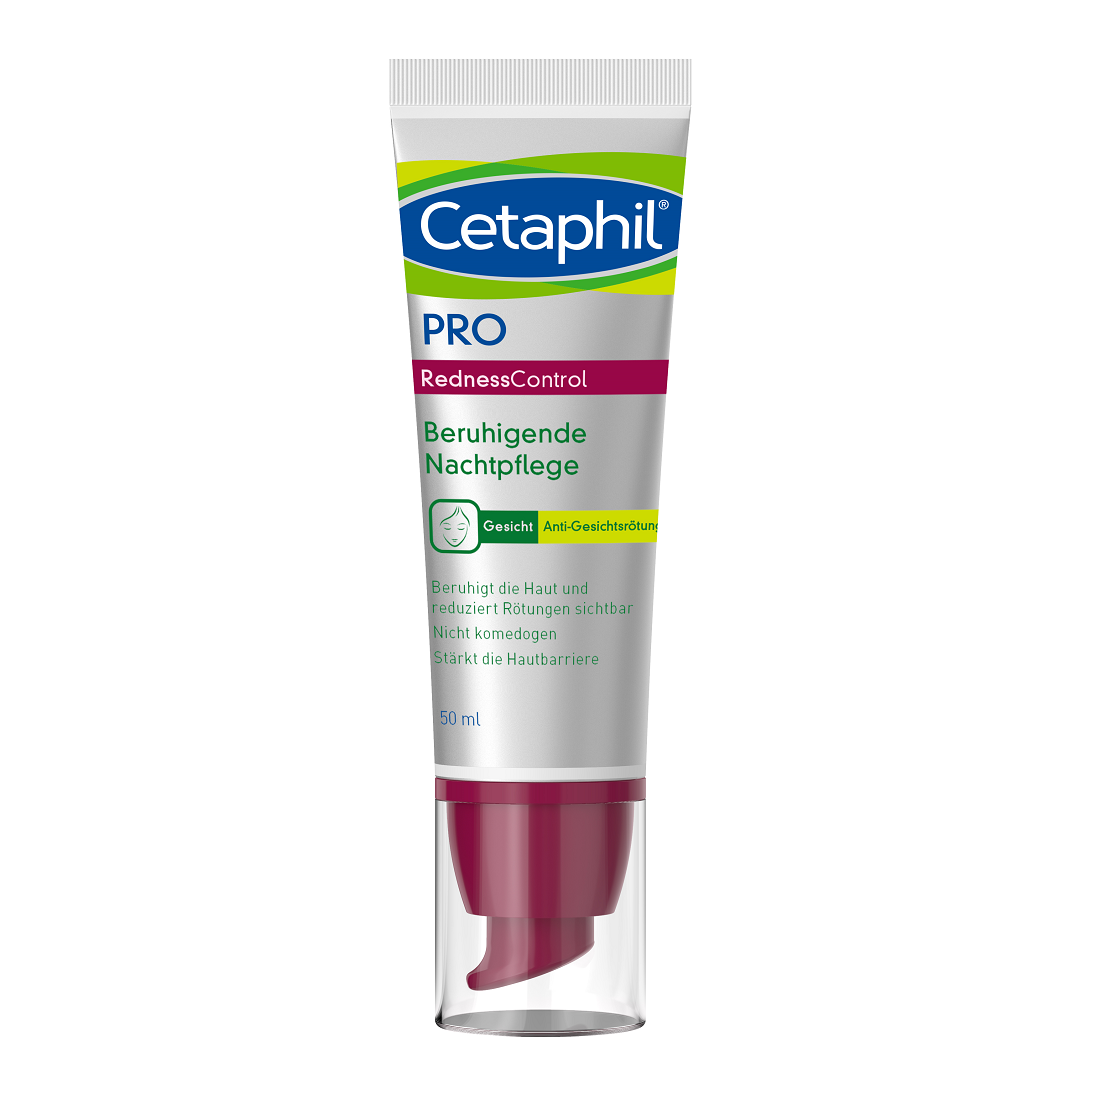 Cetaphil® PRO RednessControl umirujuća noćna krema